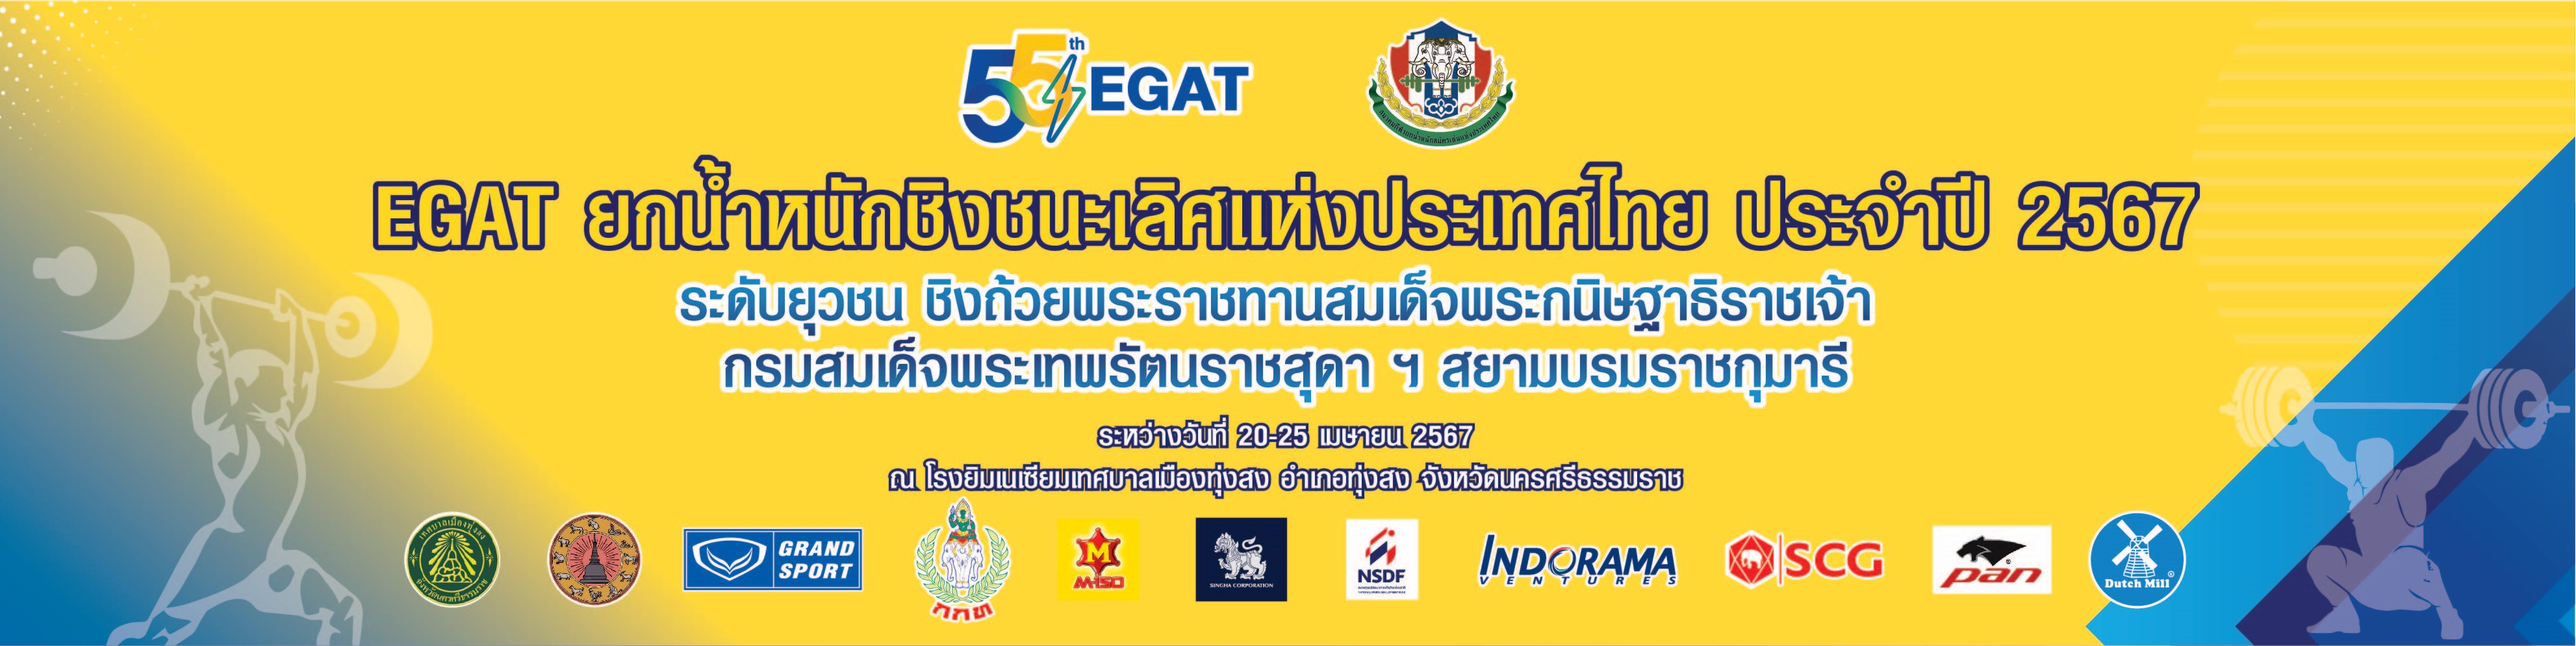 EGAT ยกน้ำหนักชิงชนะเลิศแห่งประเทศไทย ประจำปี 2567